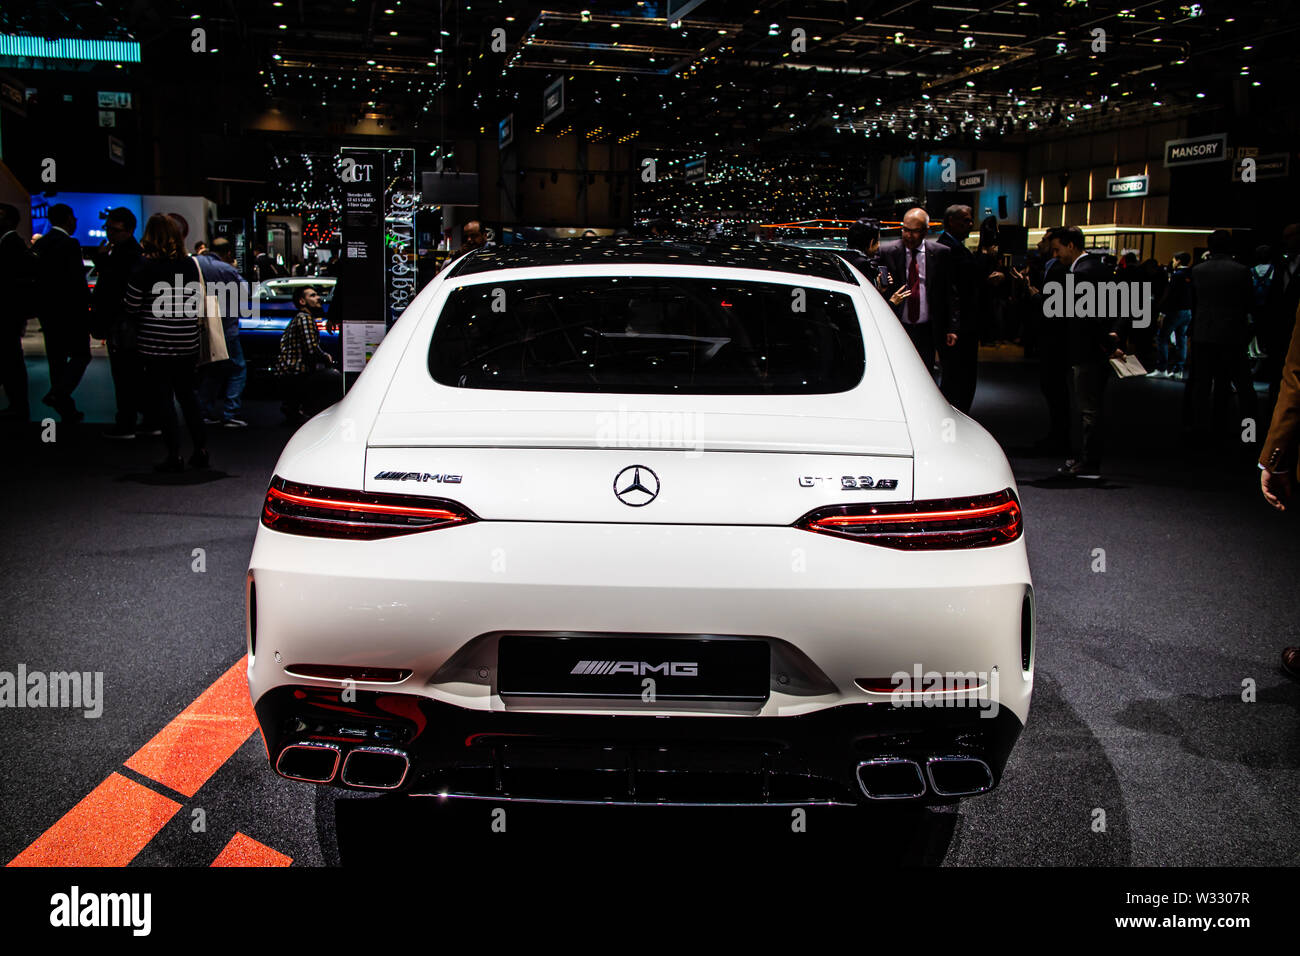 Mercedes Amg V8 Biturbo Stockfotos und -bilder Kaufen - Alamy